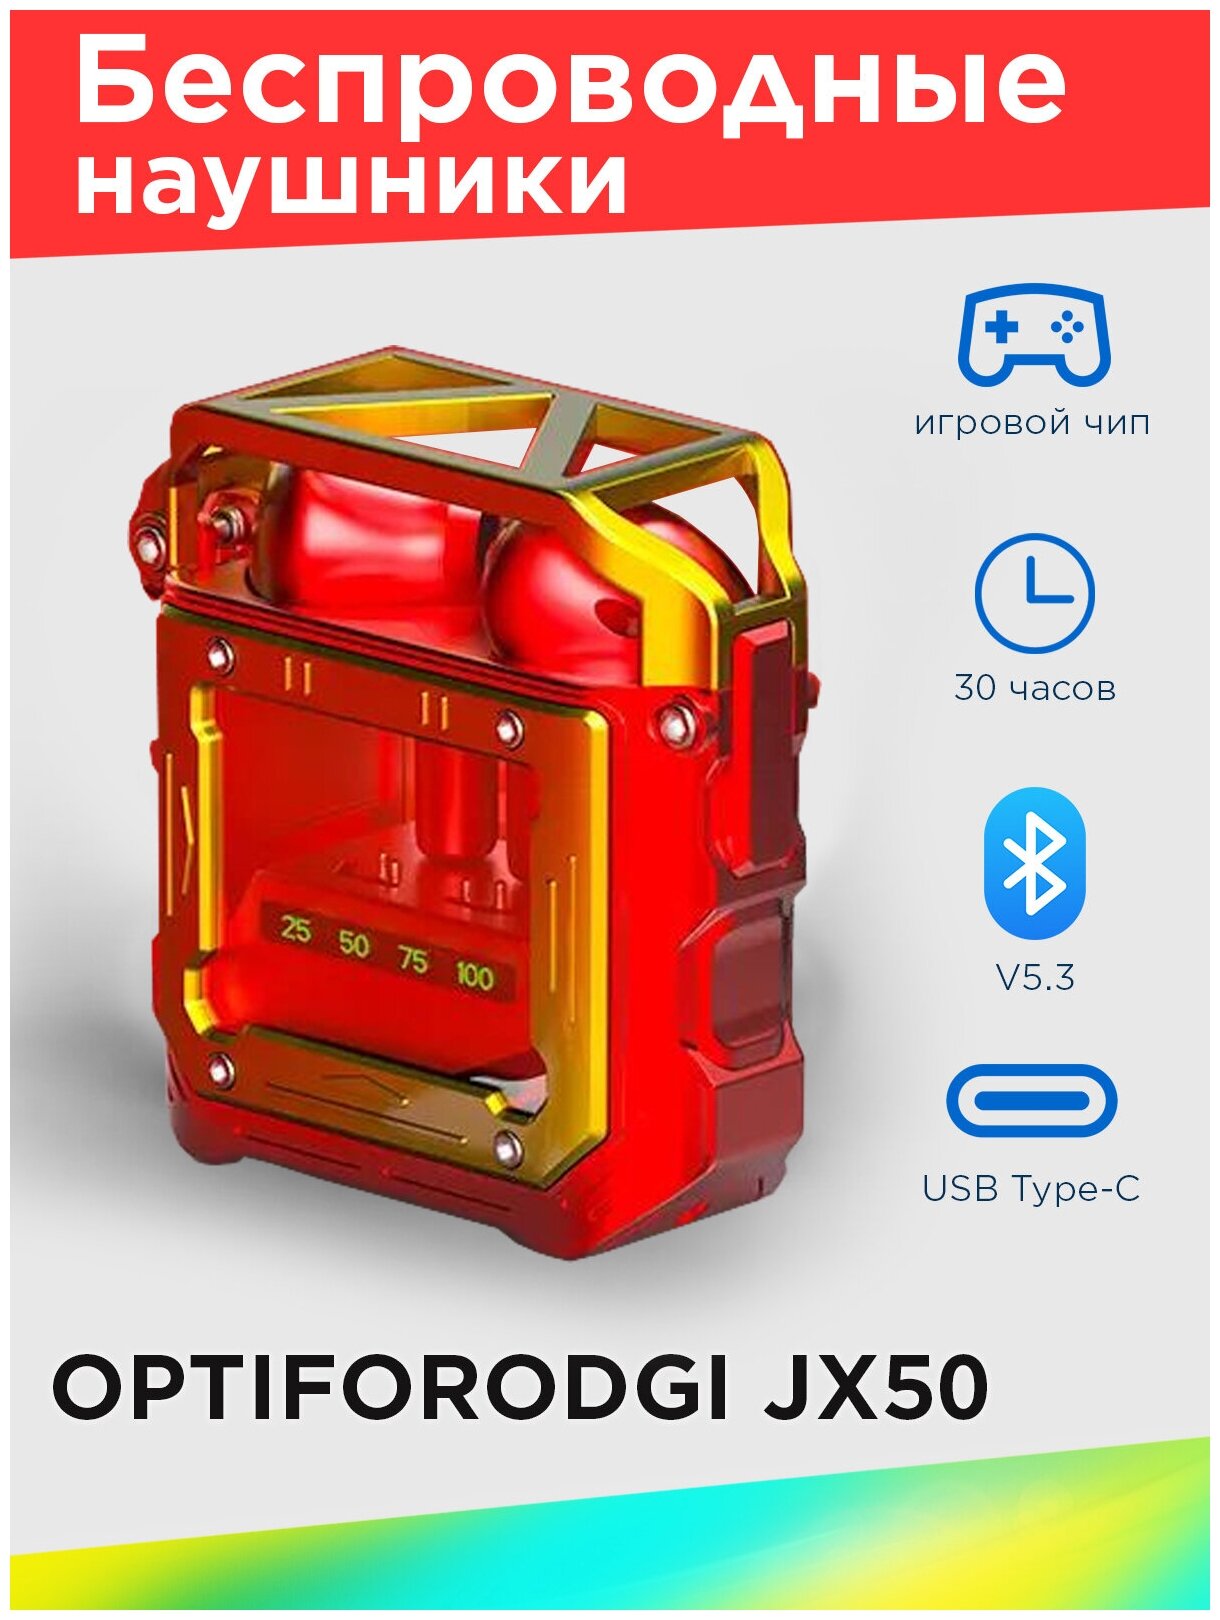 Беспроводные наушники OPTIFORODGI JX50 цвет красный